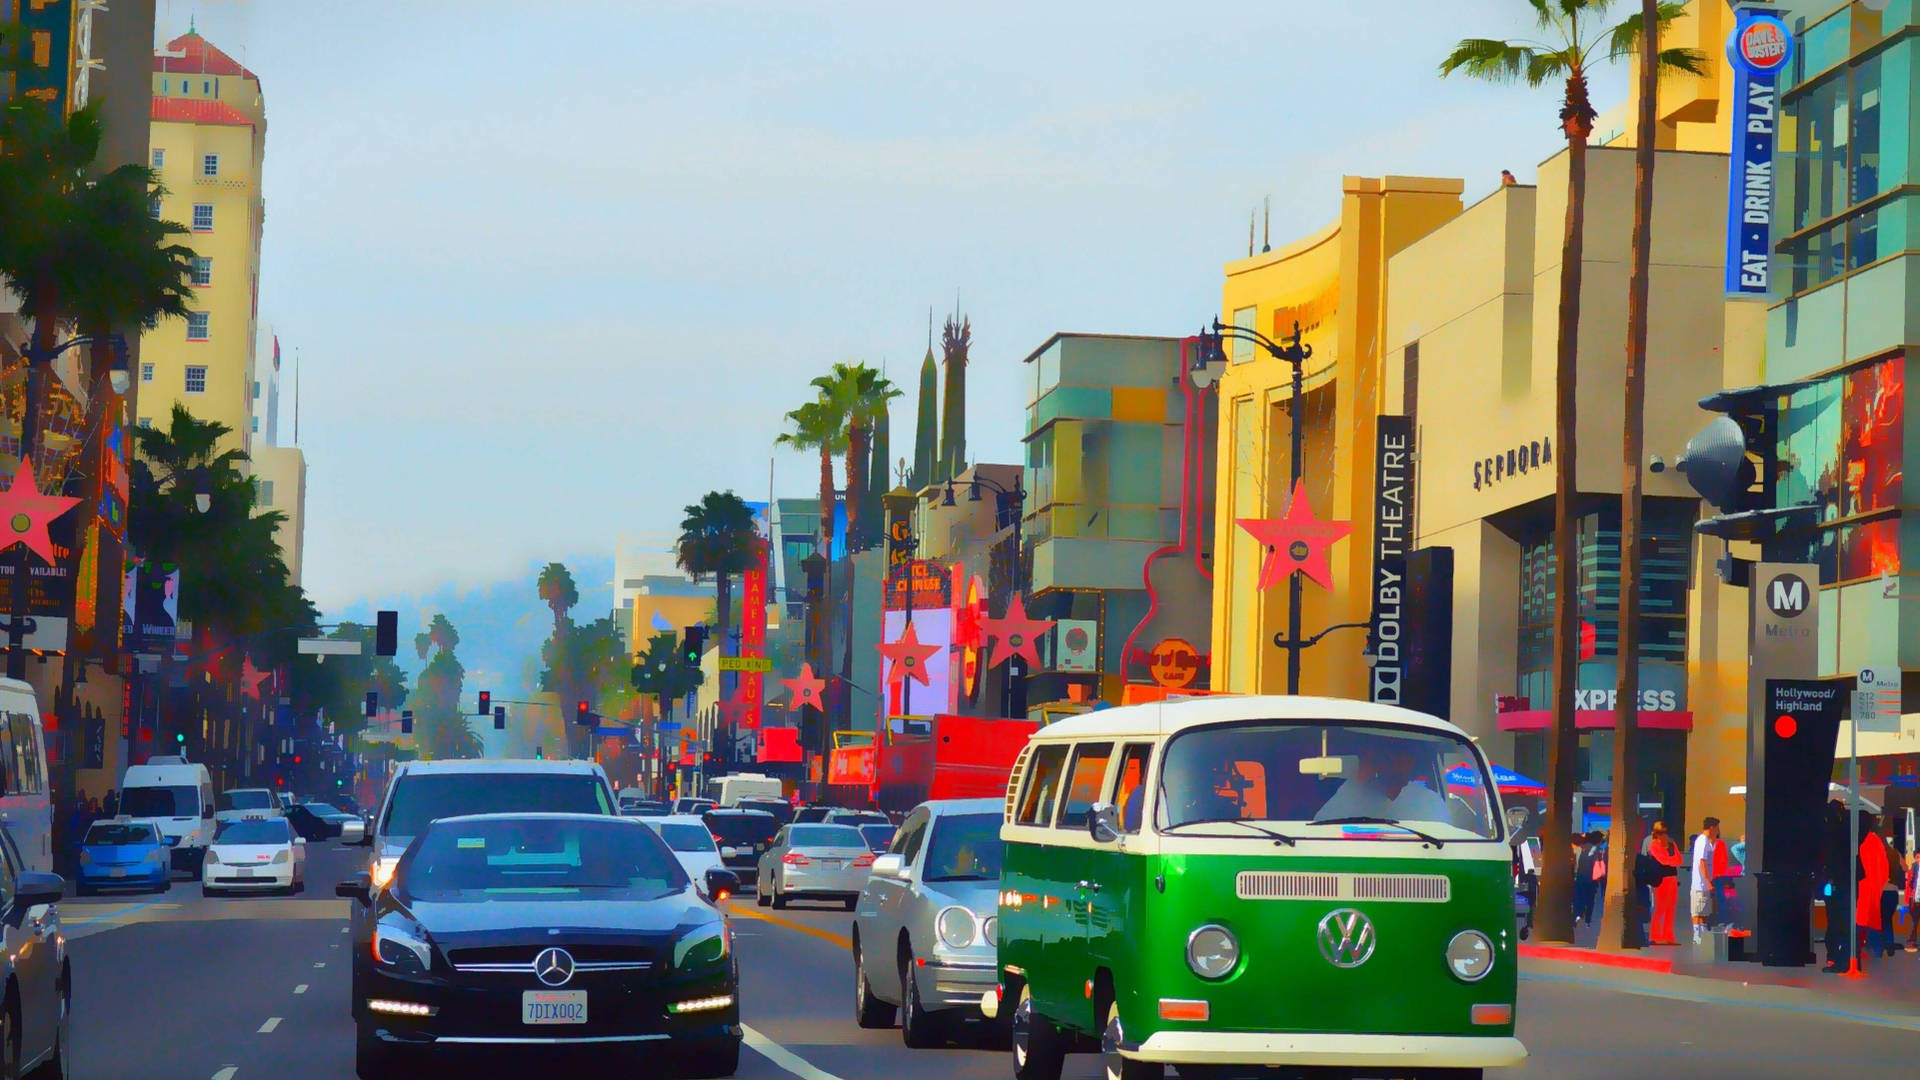 Vibrant Hollywood Boulevard Art